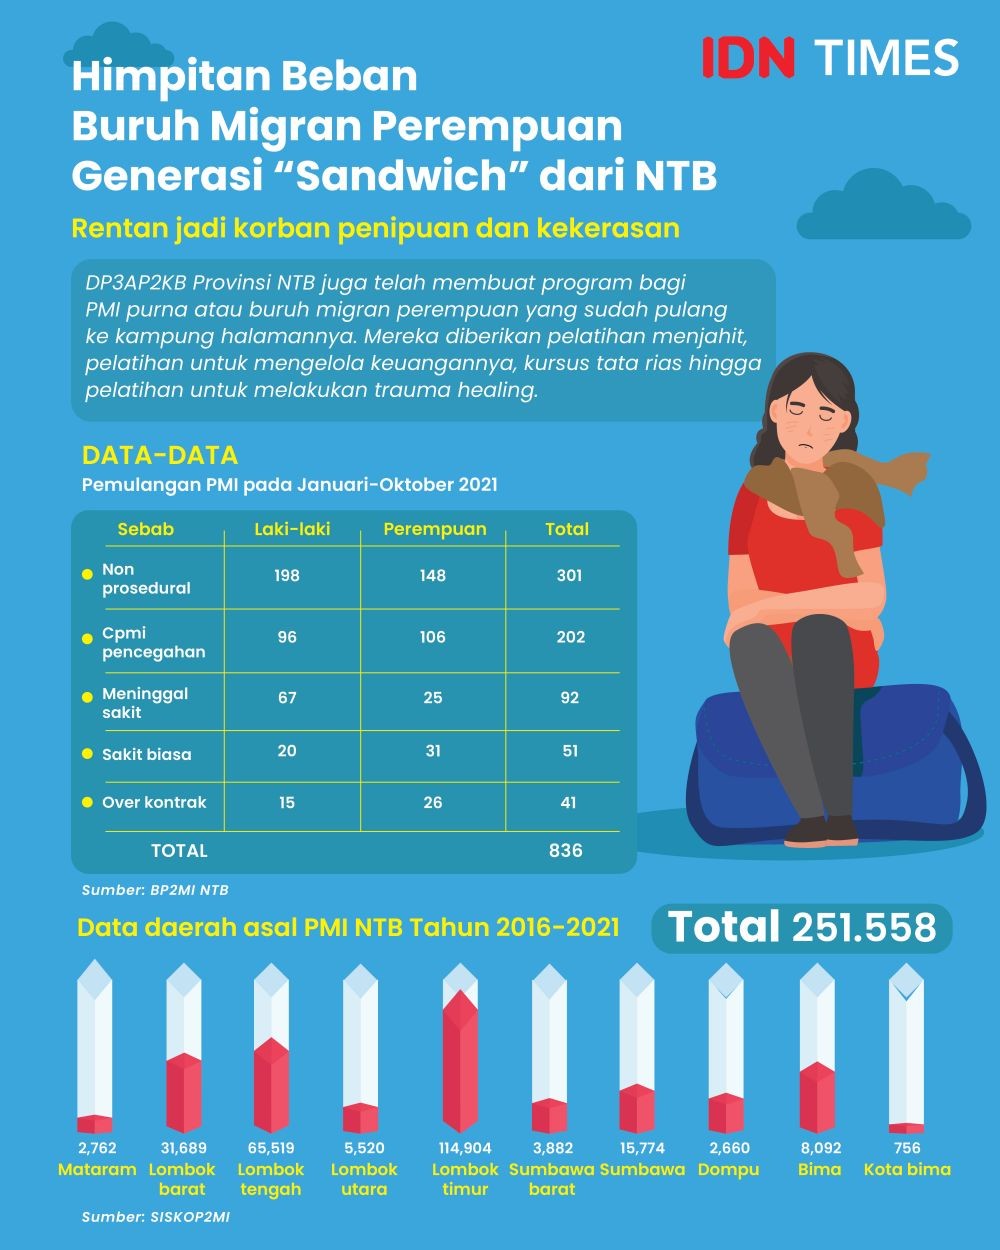 Himpitan Beban Buruh Migran Perempuan Generasi “Sandwich” dari NTB